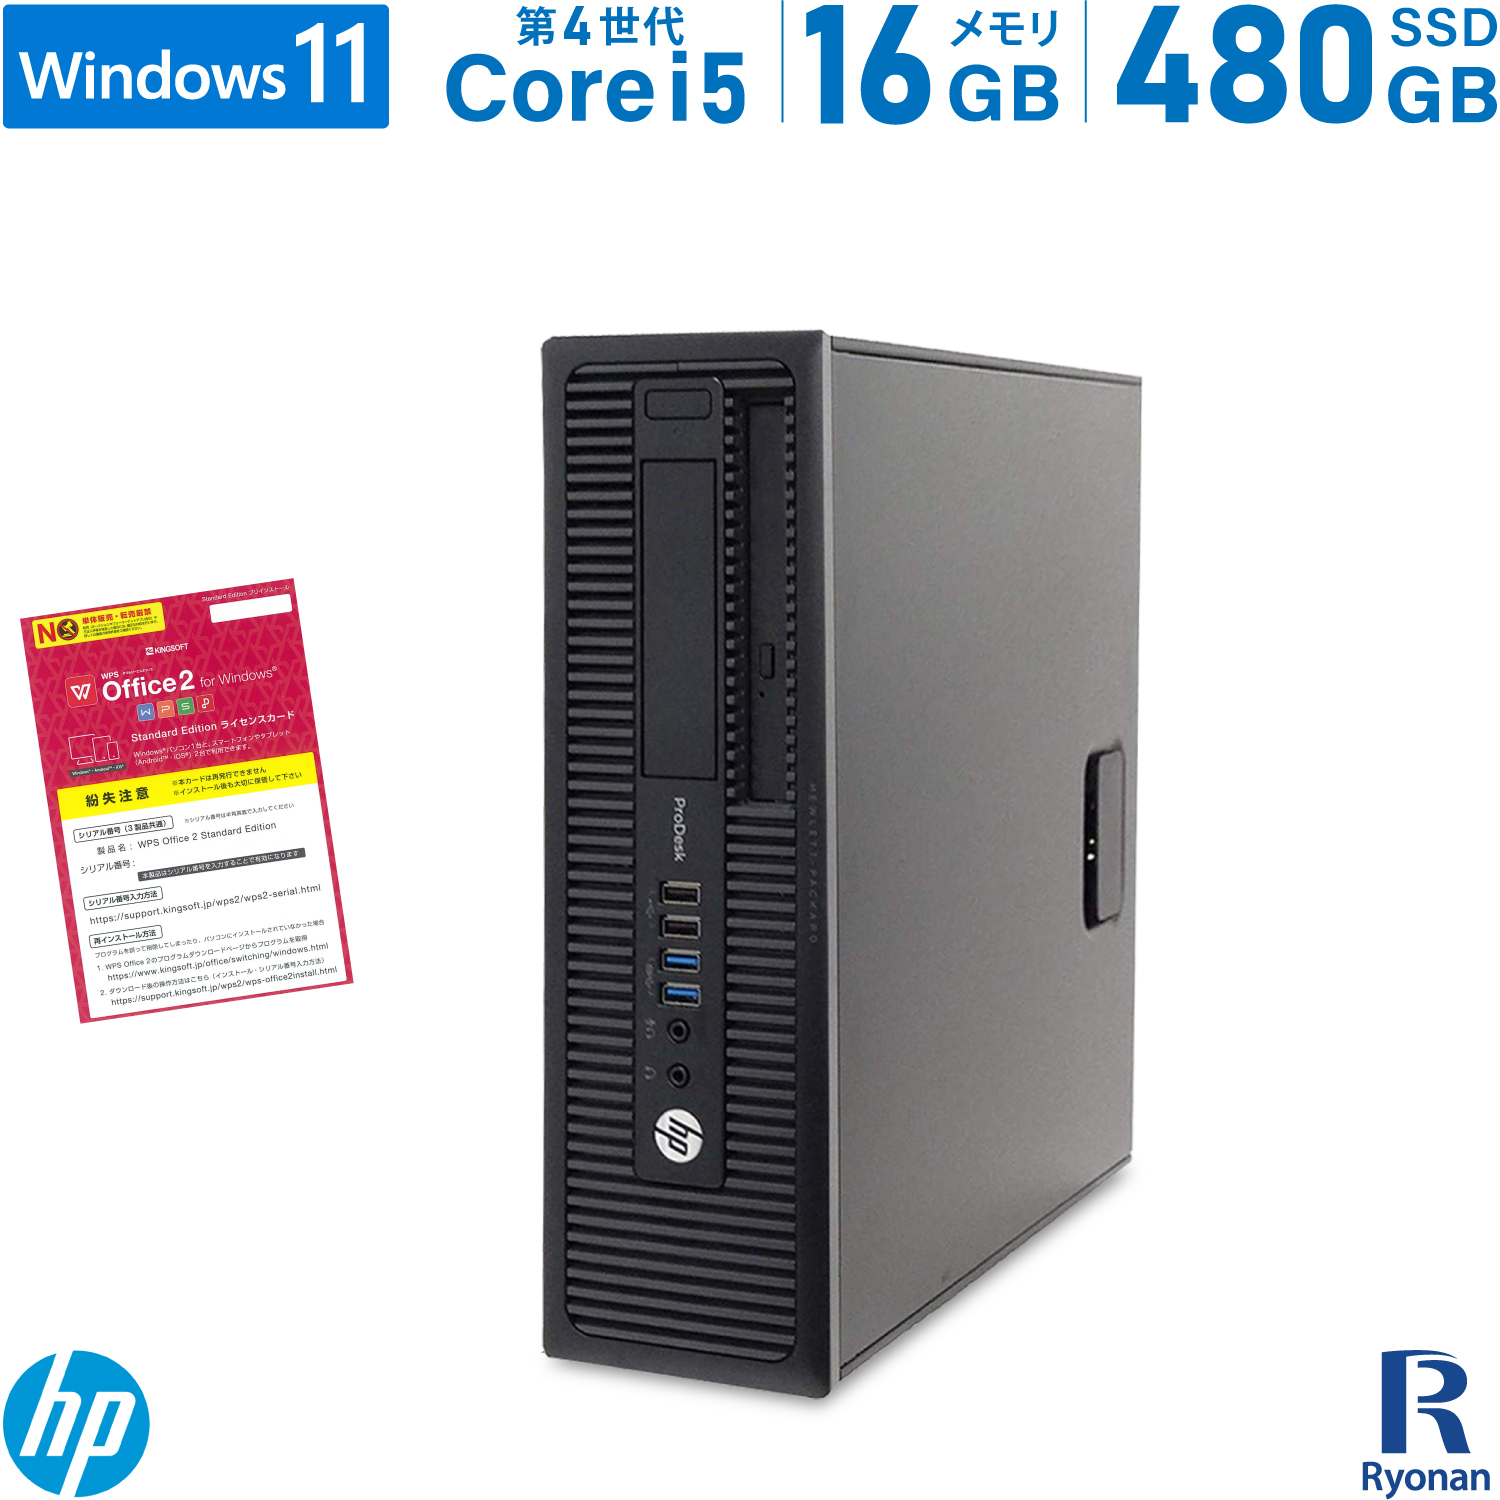 30日保証 Windows7 Pro 32BIT HP ProDesk 600 G1 SF Core i5 第4世代